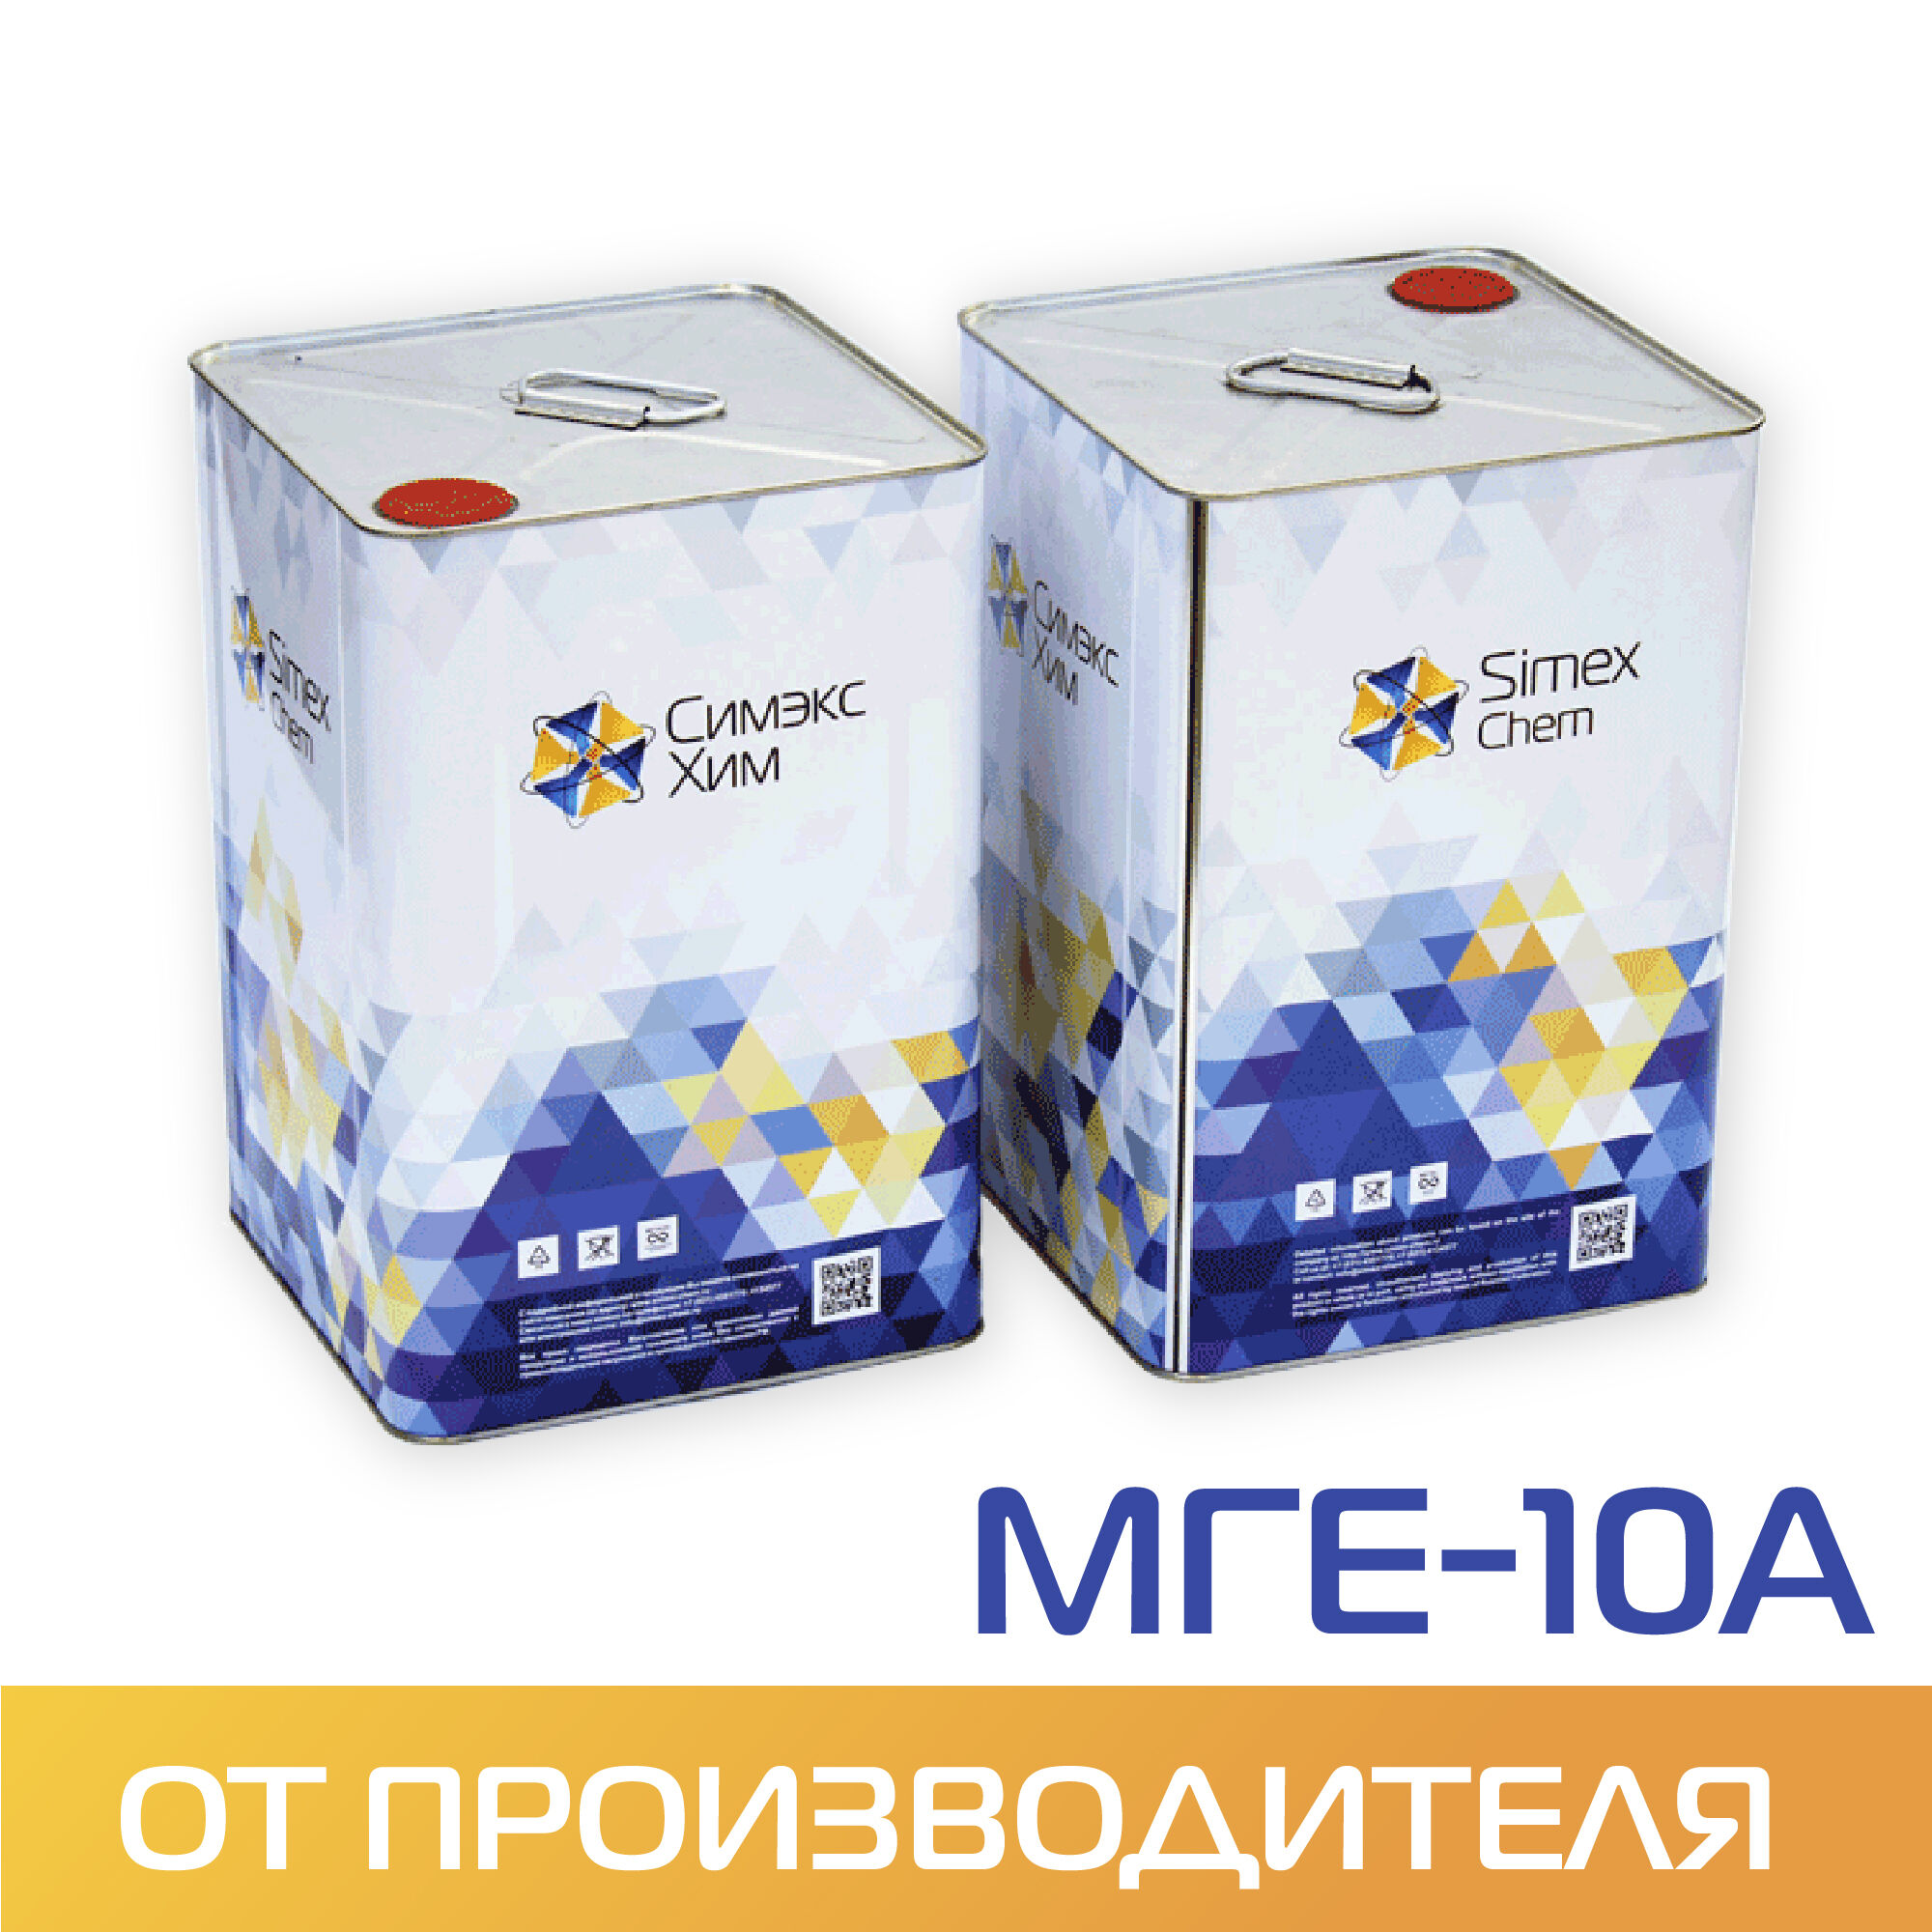 Масло гидравлическое МГЕ-10А бидон 14 кг